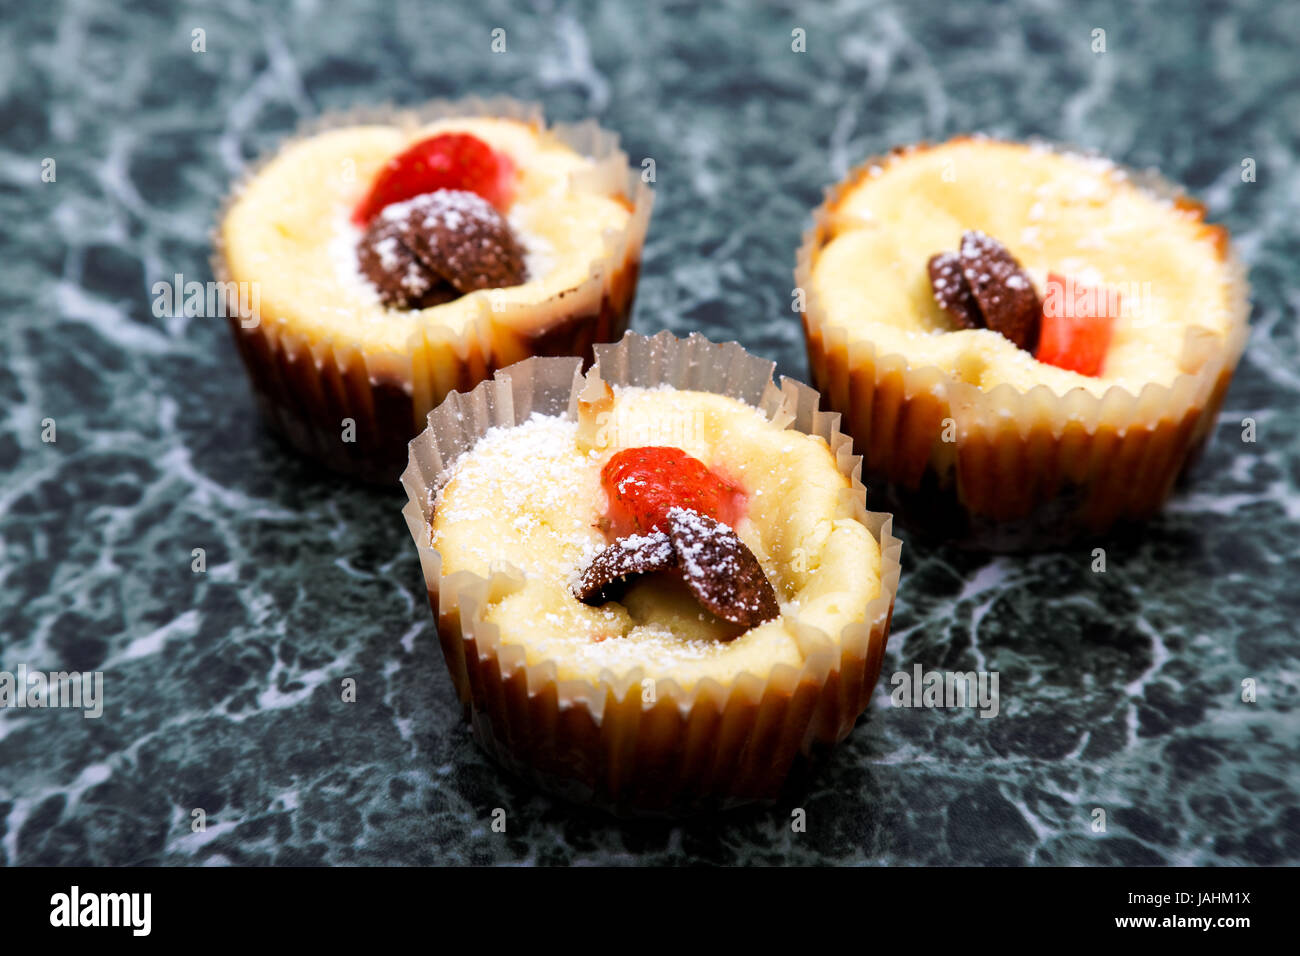 Muffins mit Frischkäse und frischen Erdbeeren,Muffins with cream cheese and fresh strawberries Stock Photo